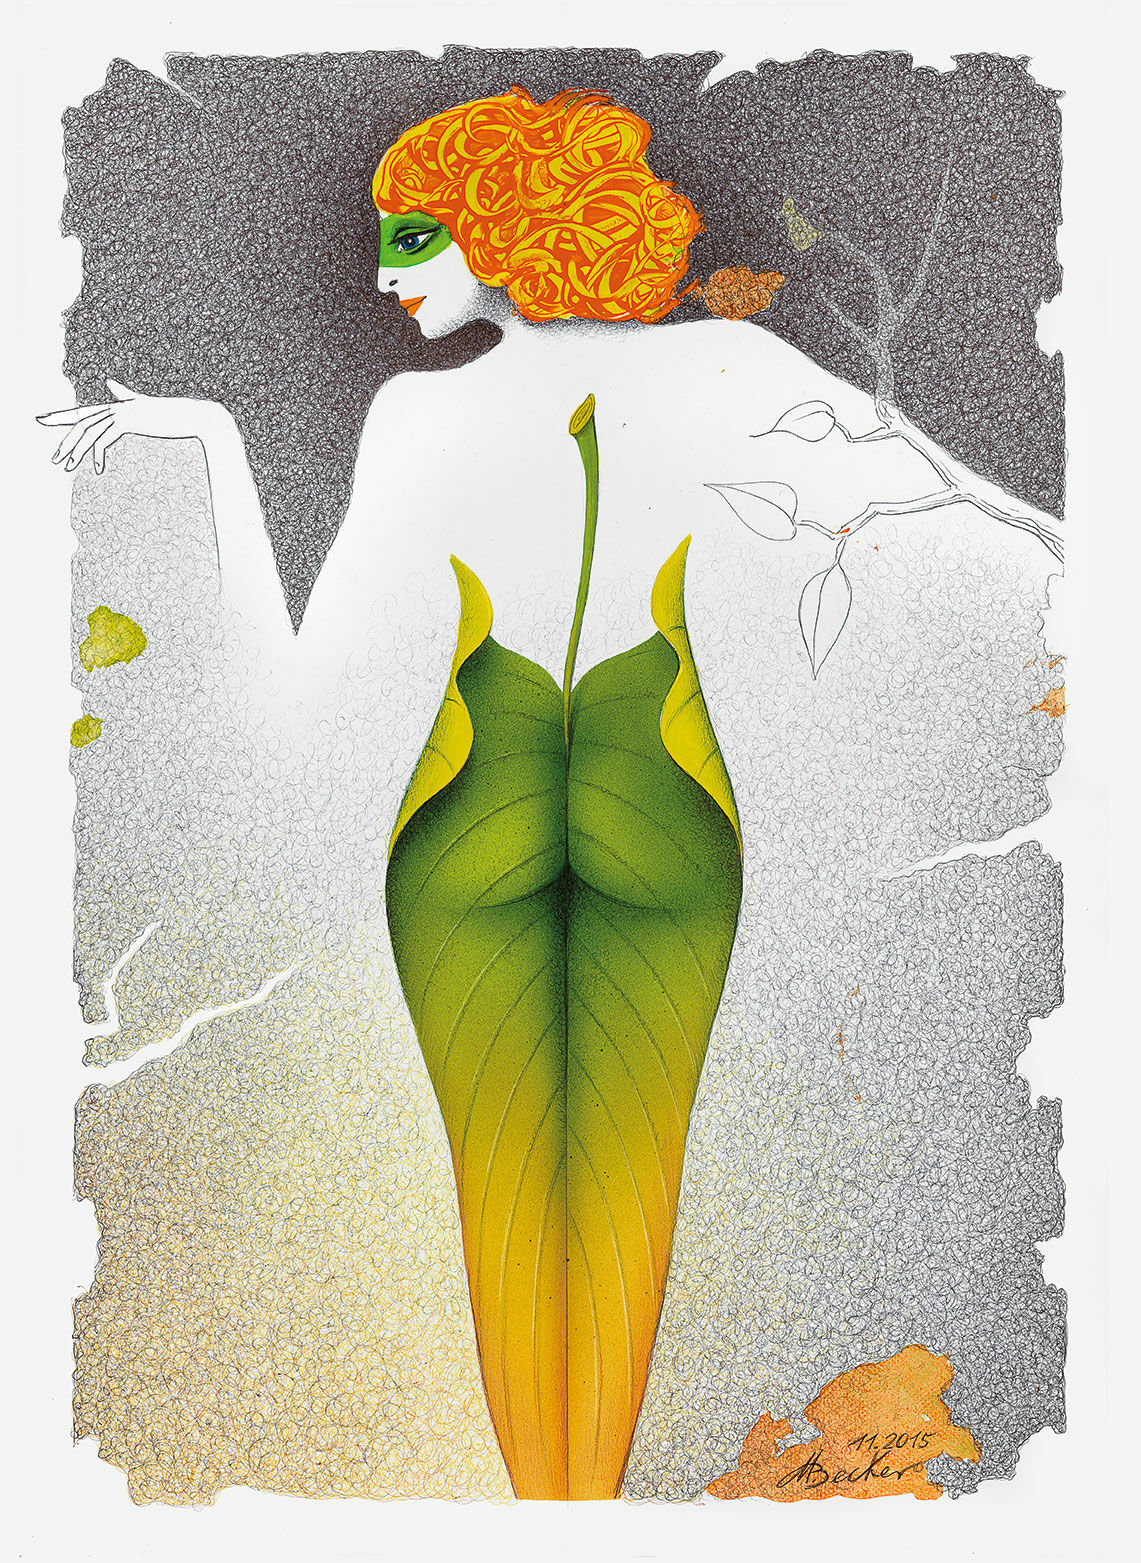 Beeld "Leaf Figure" (2015), niet ingelijst von Michael Becker